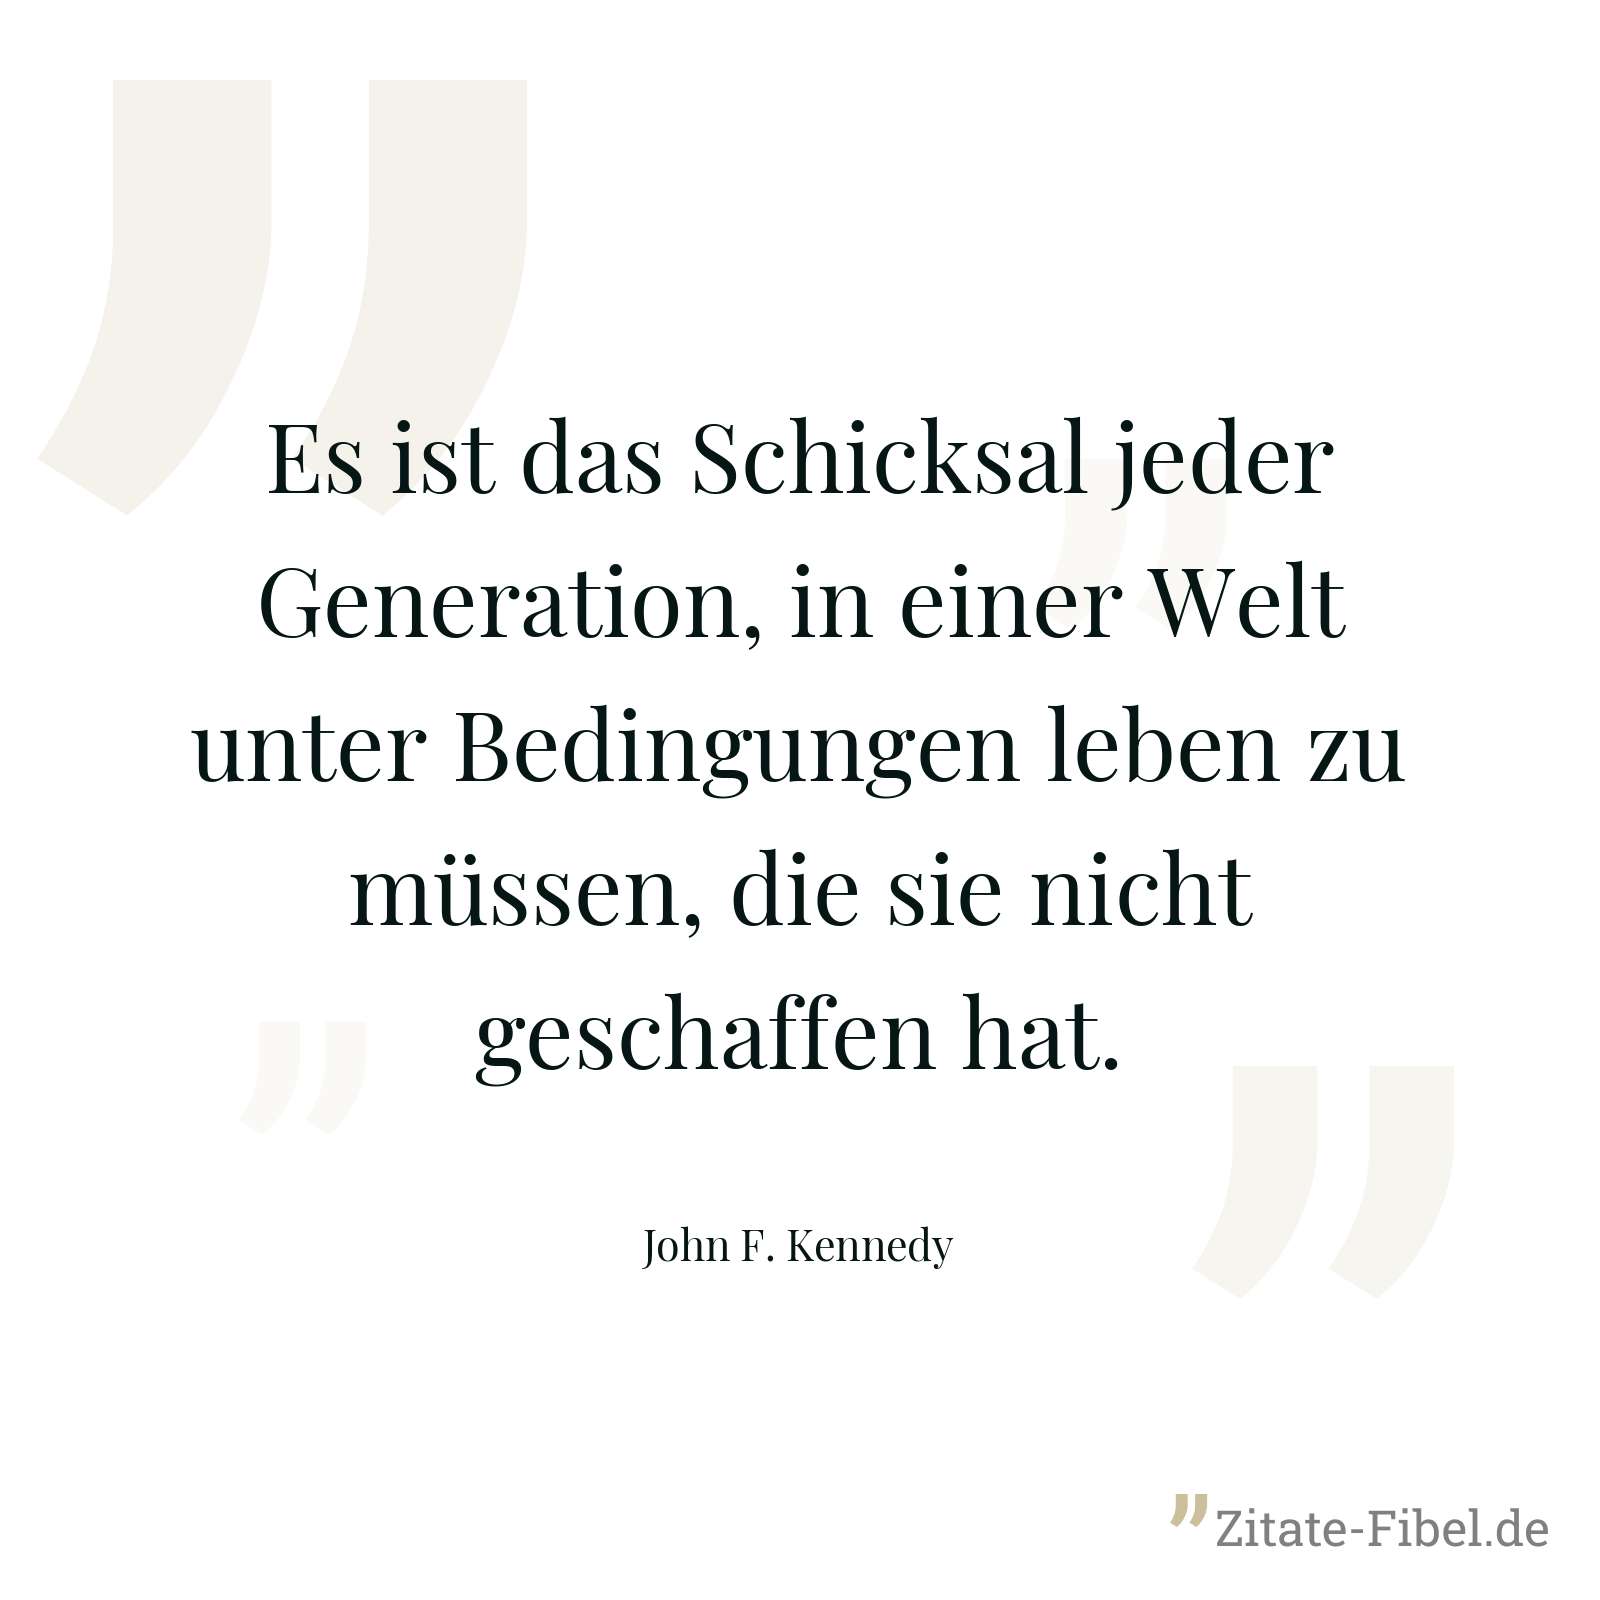 Es ist das Schicksal jeder Generation, in einer Welt unter Bedingungen leben zu müssen, die sie nicht geschaffen hat. - John F. Kennedy